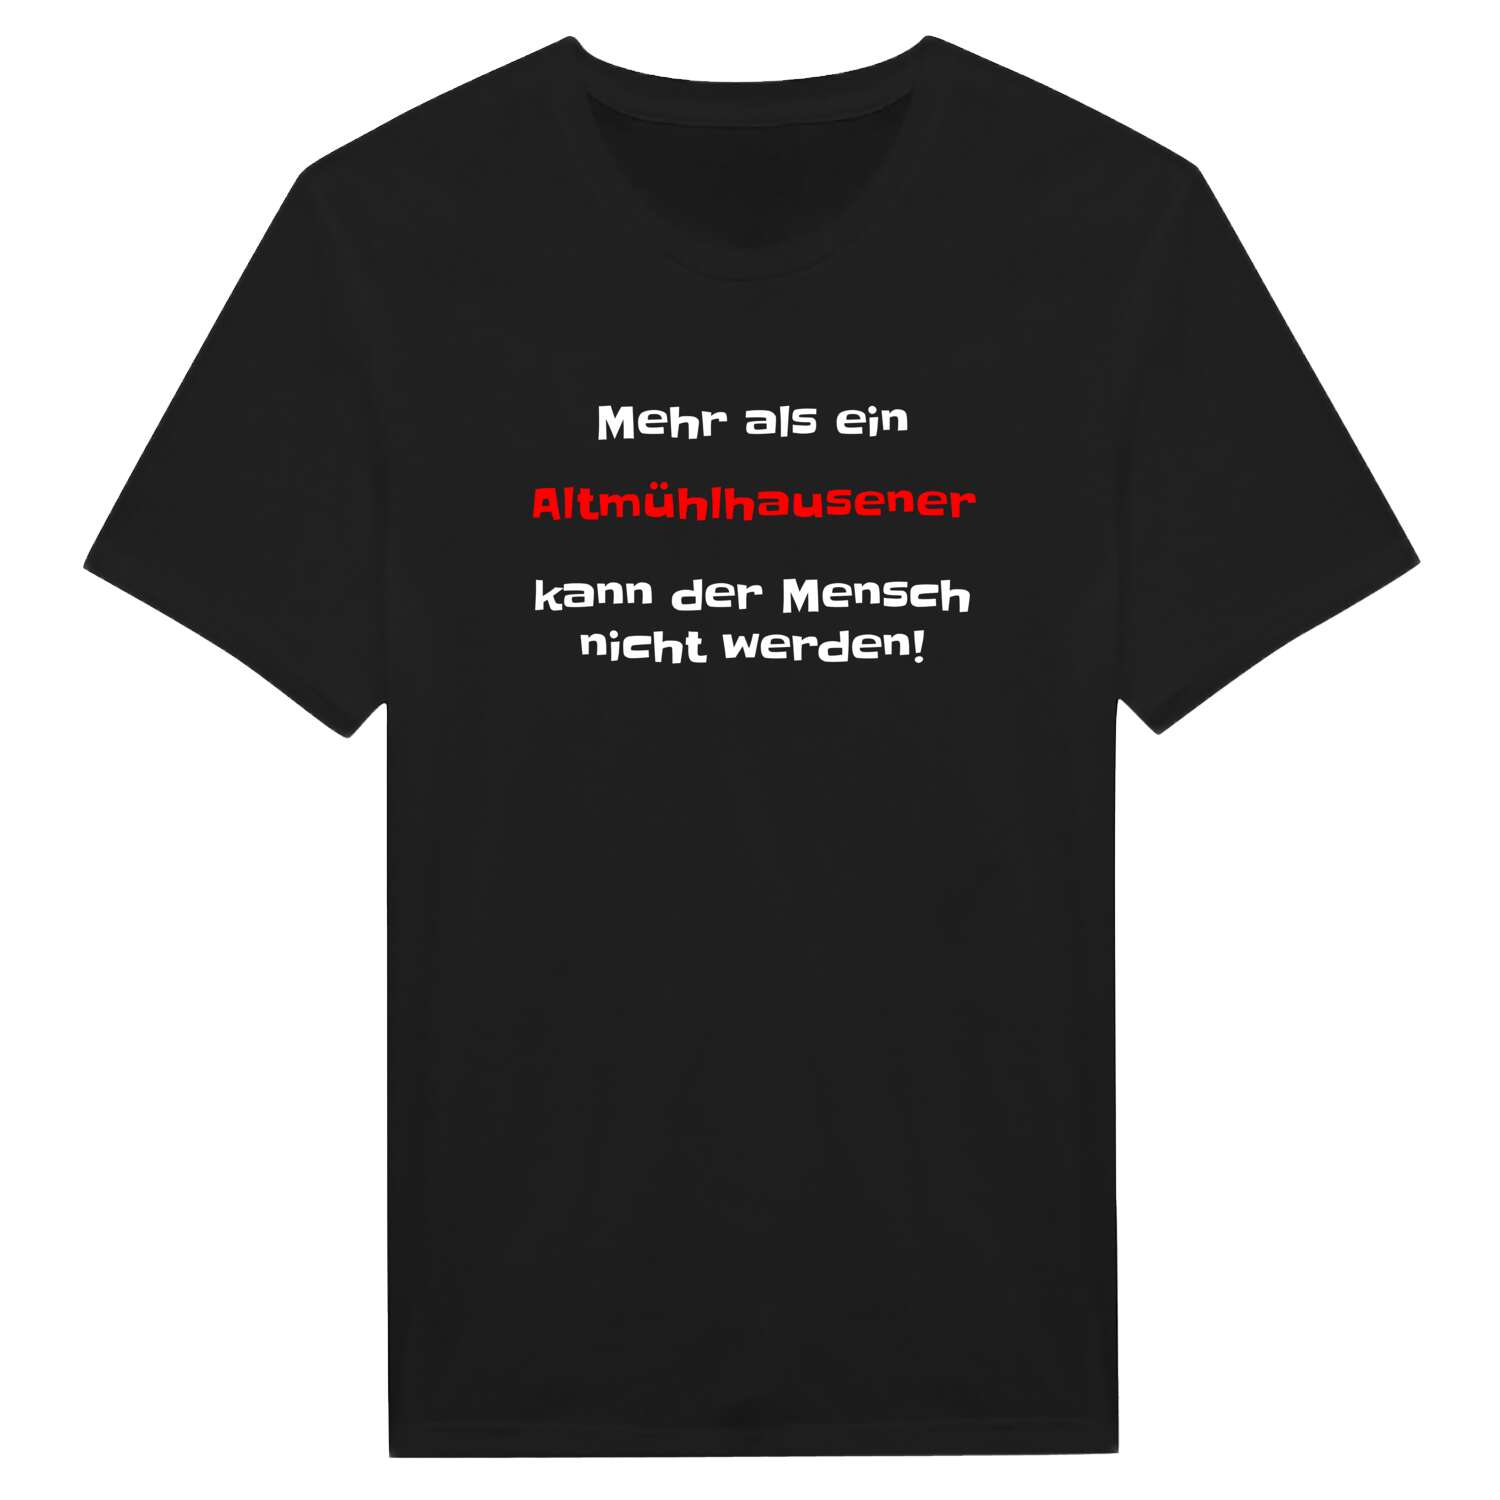 Altmühlhausen T-Shirt »Mehr als ein«